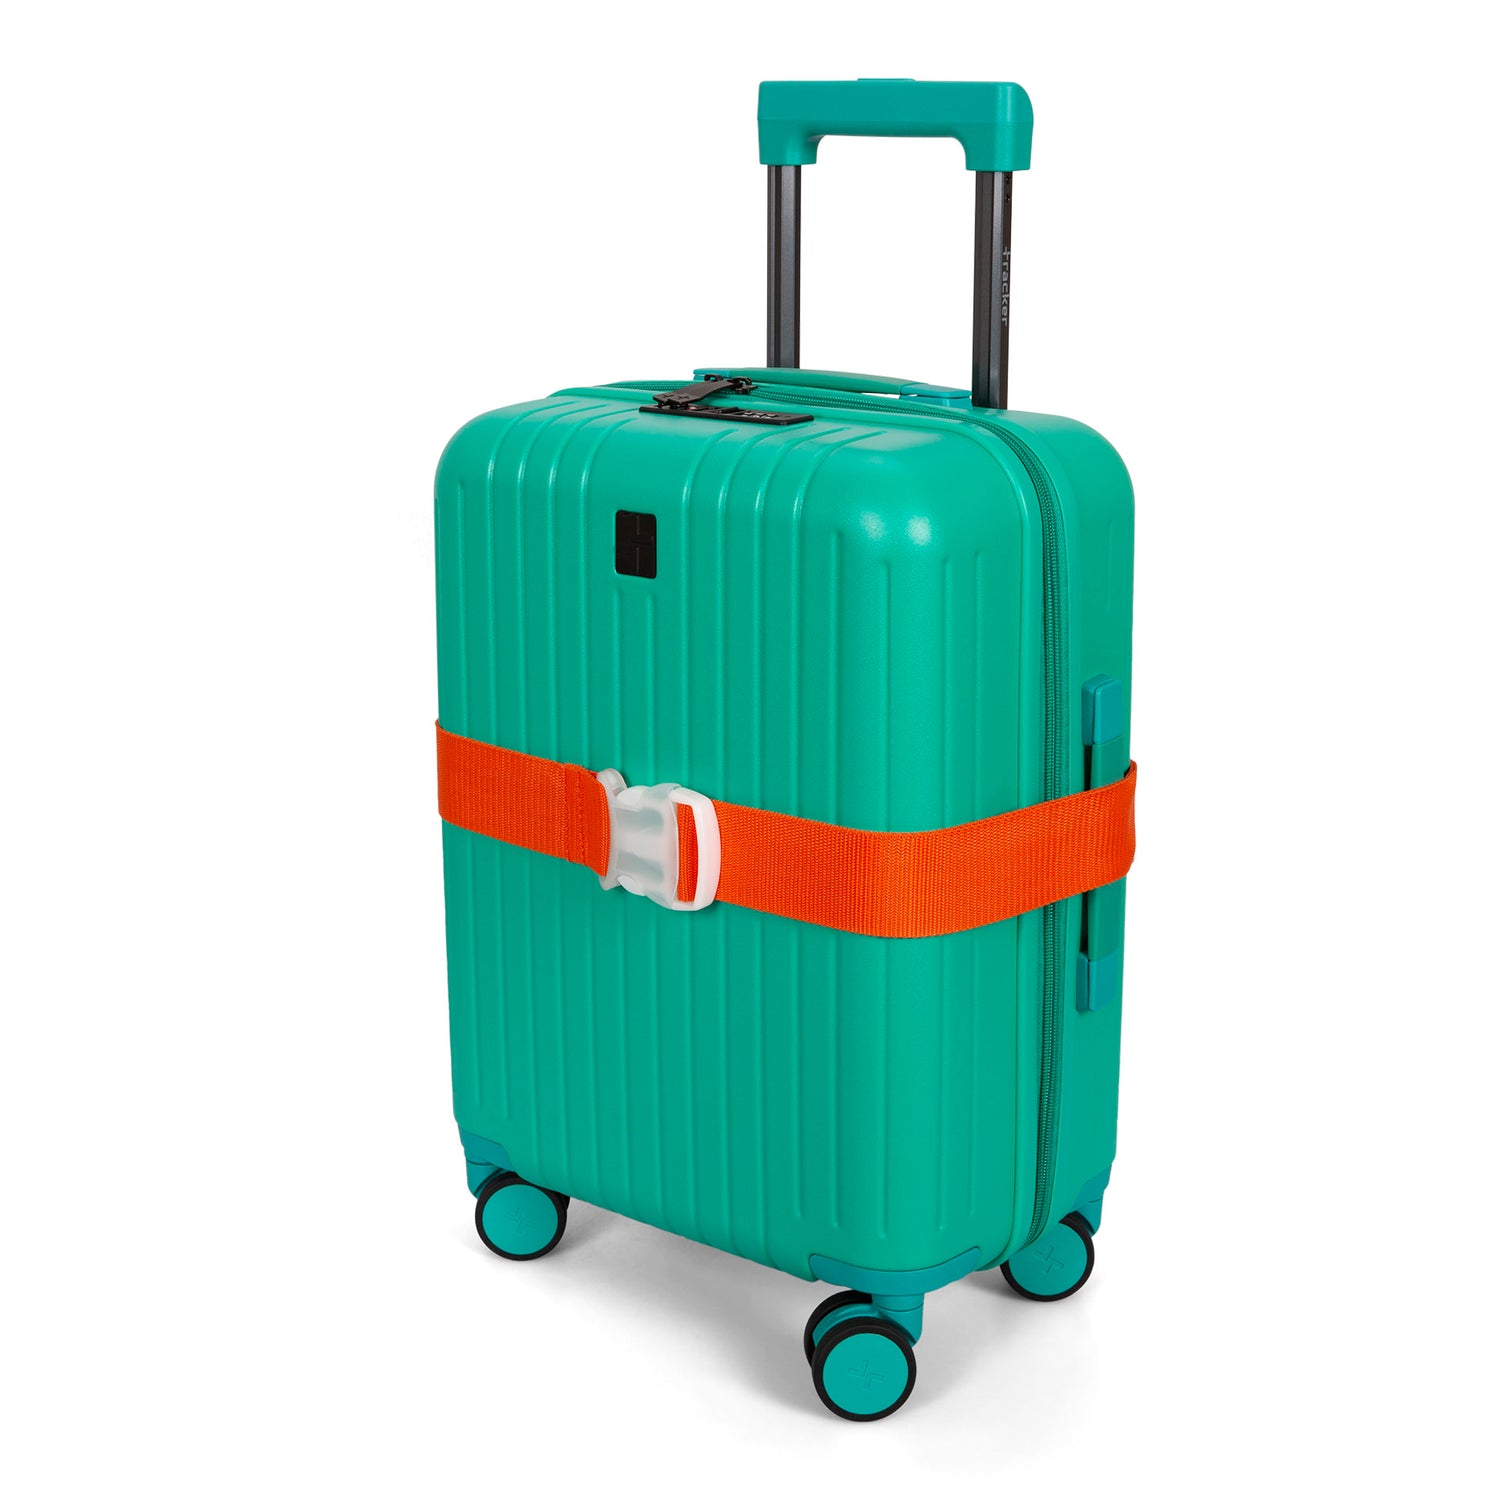 Axgo Luggage Straps Heavy Duty 4 Pcs Adjustable Suitcase Belts